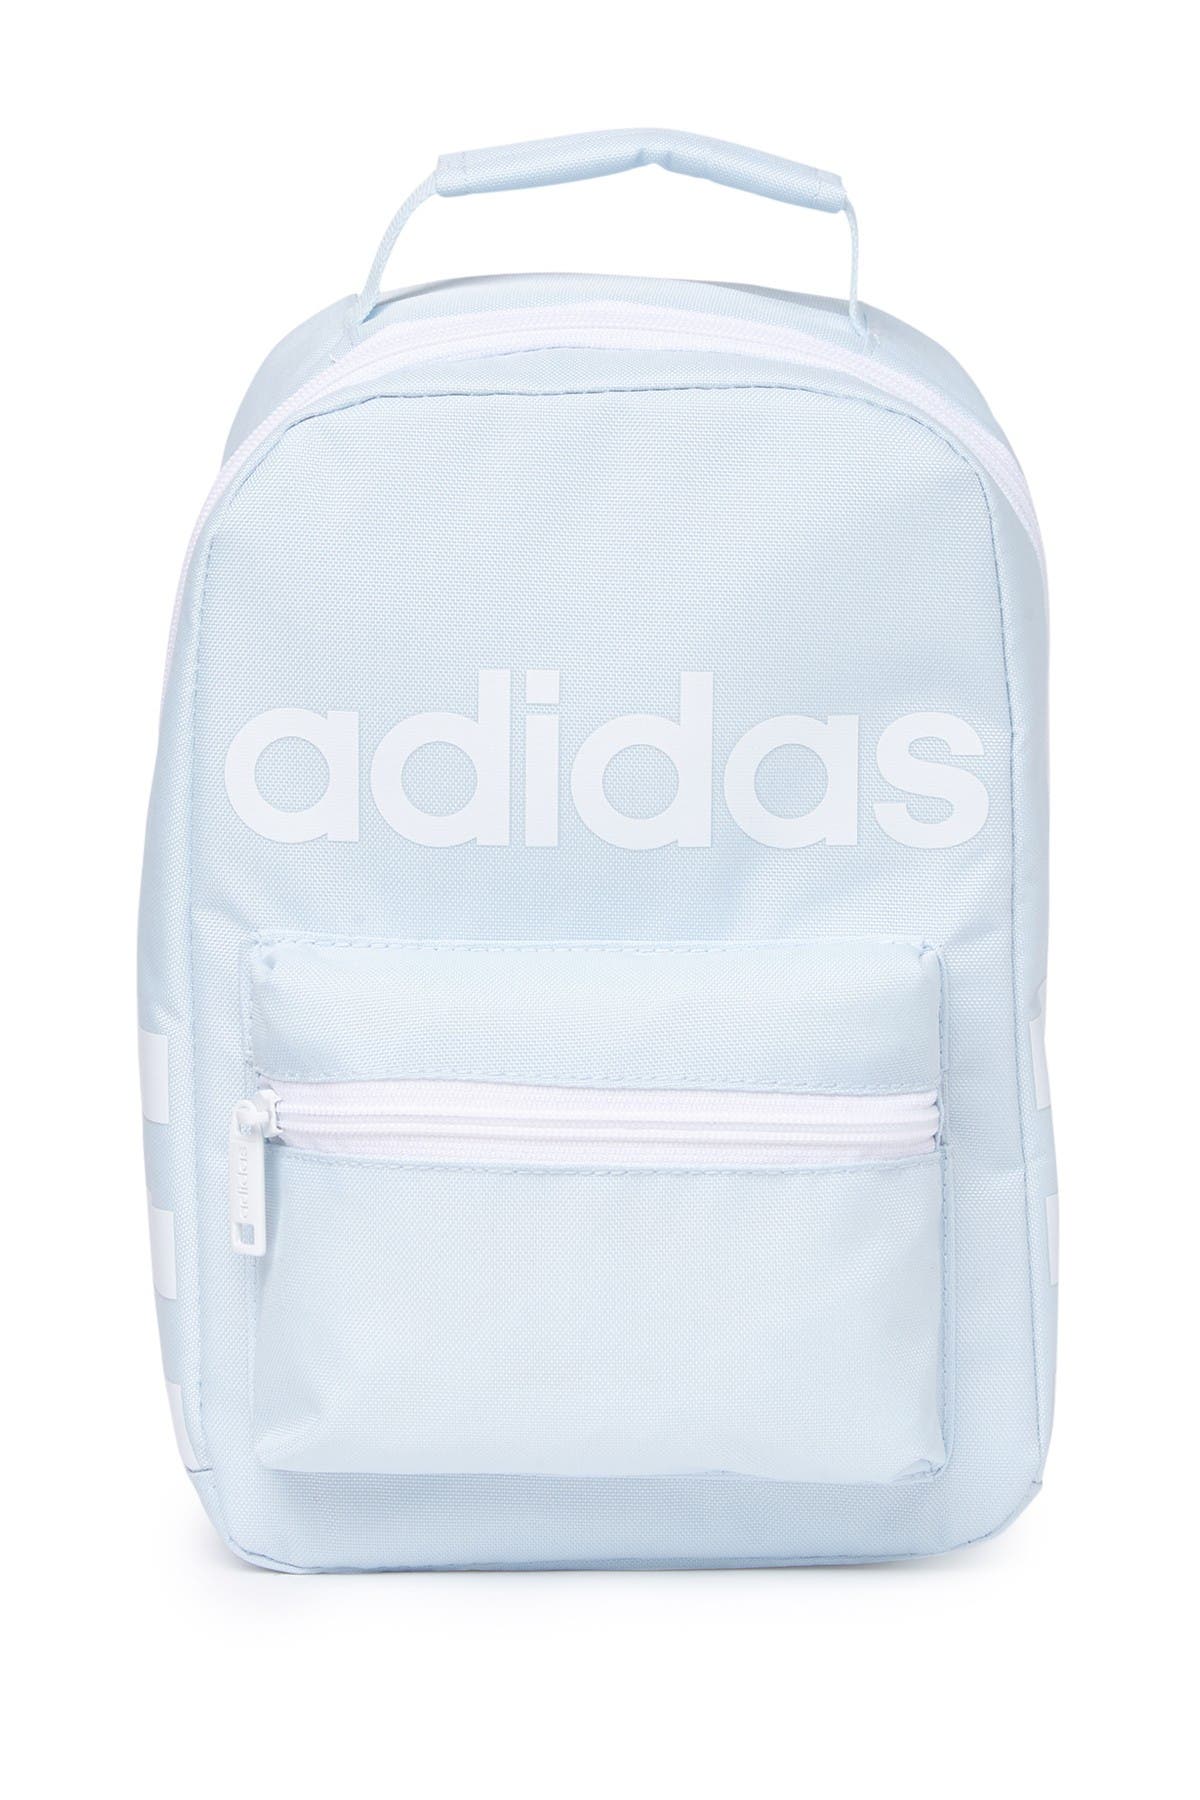 Adidas + Santiago Lunch Bag